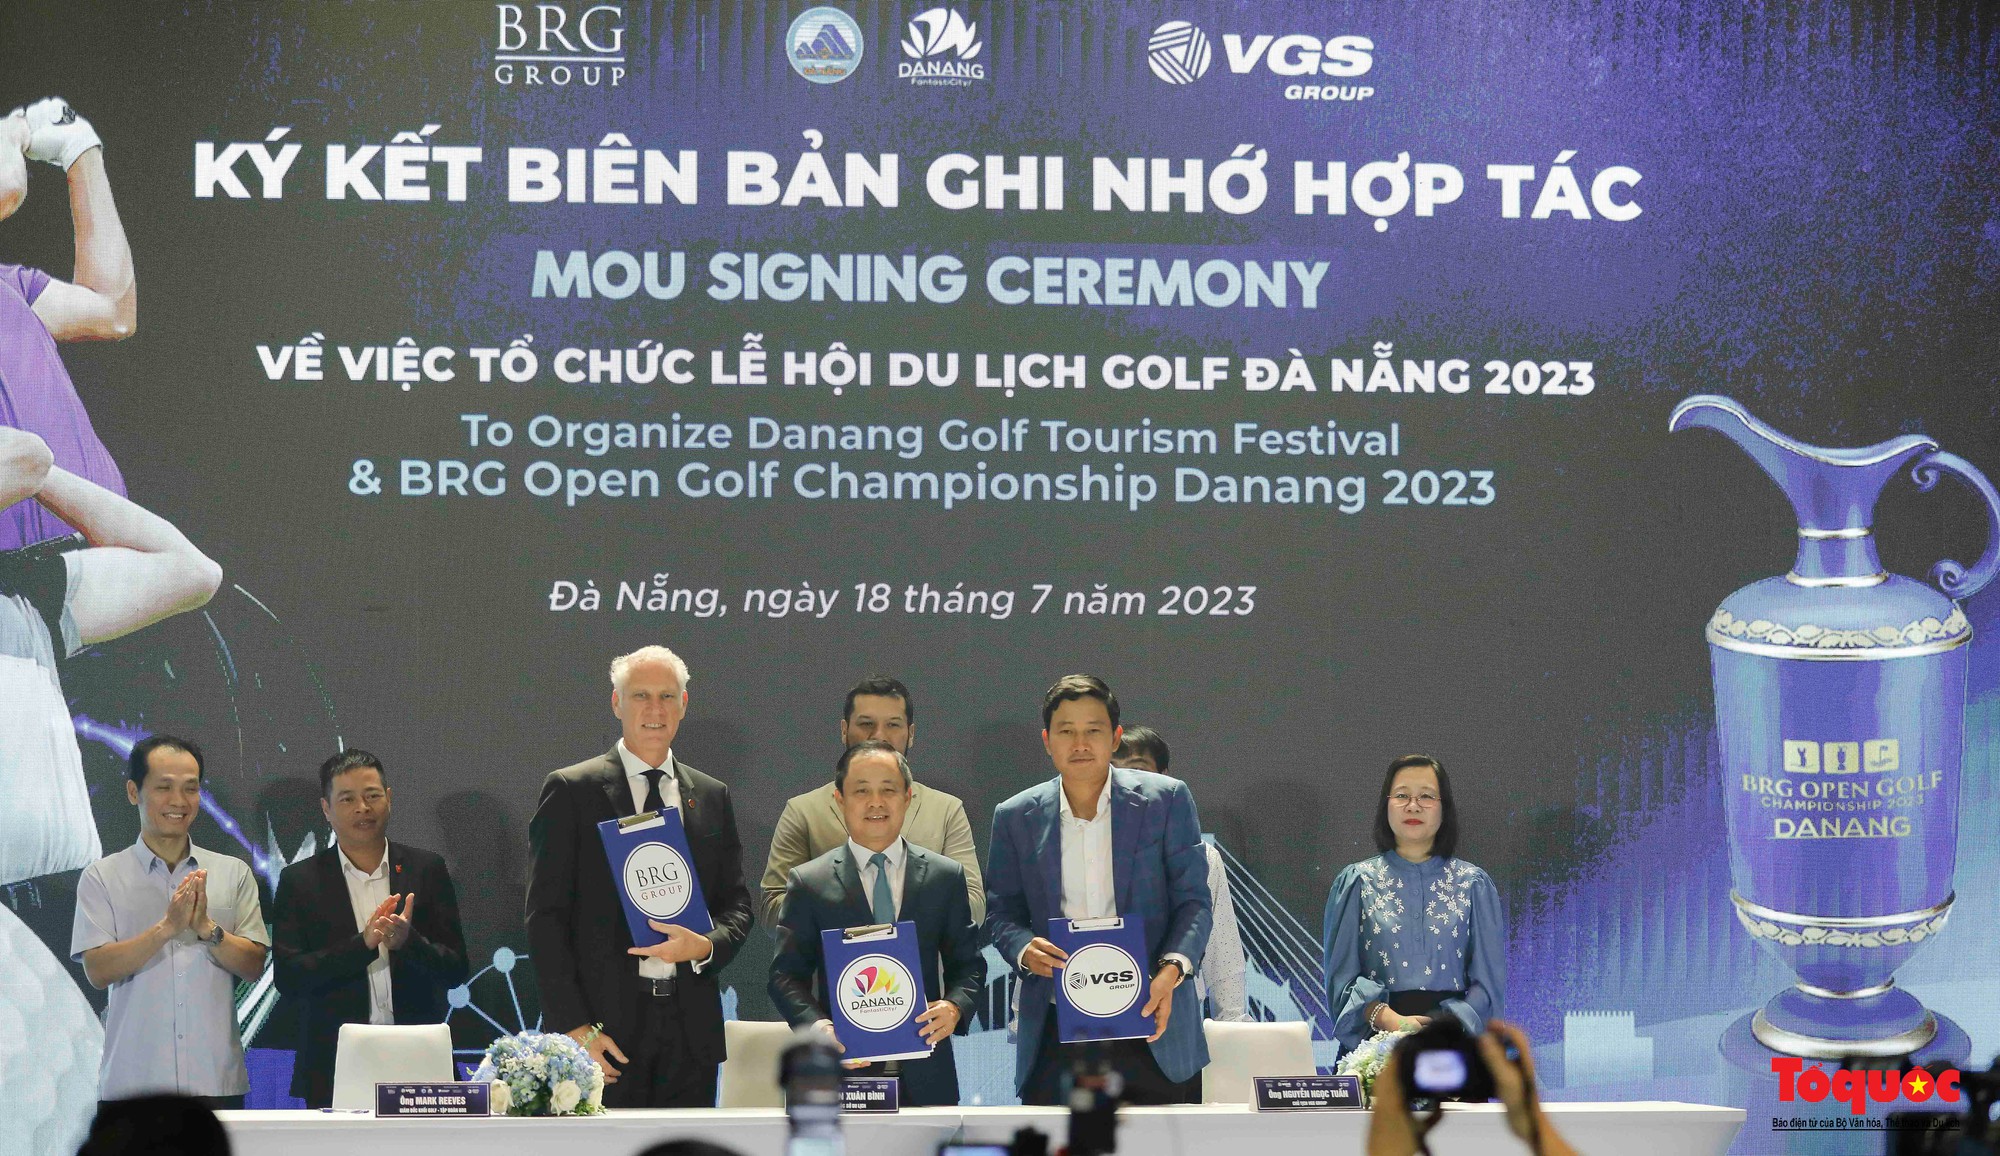 Lễ hội du lịch golf Đà Nẵng 2023 với hàng loạt hoạt động hấp dẫn - Ảnh 4.